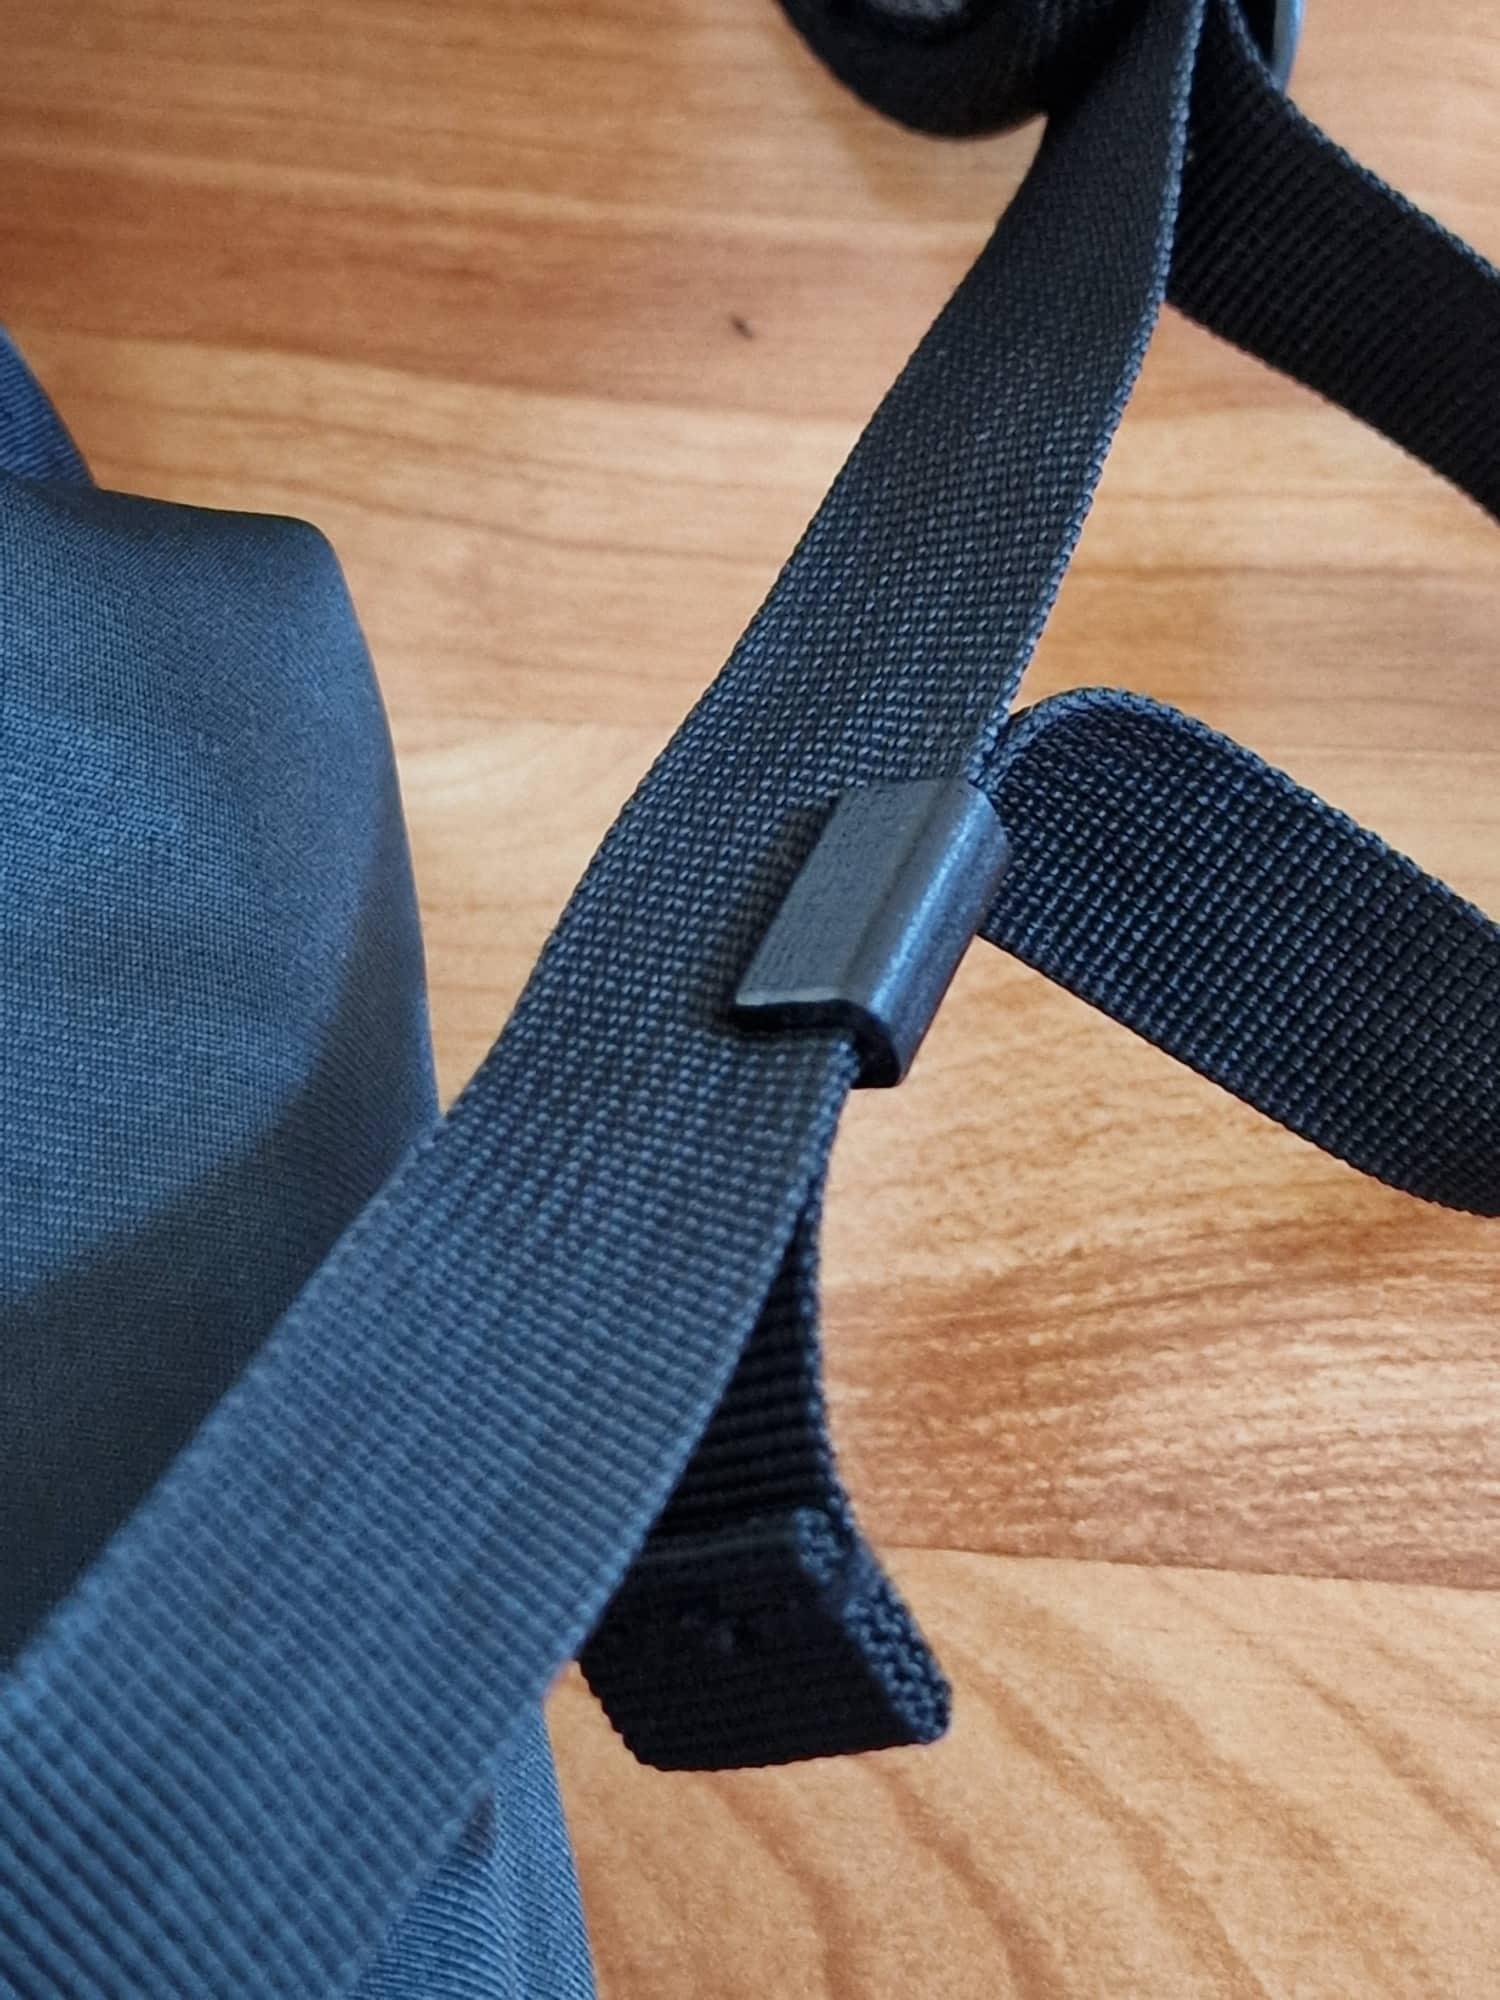 backpack strap clip 3d model